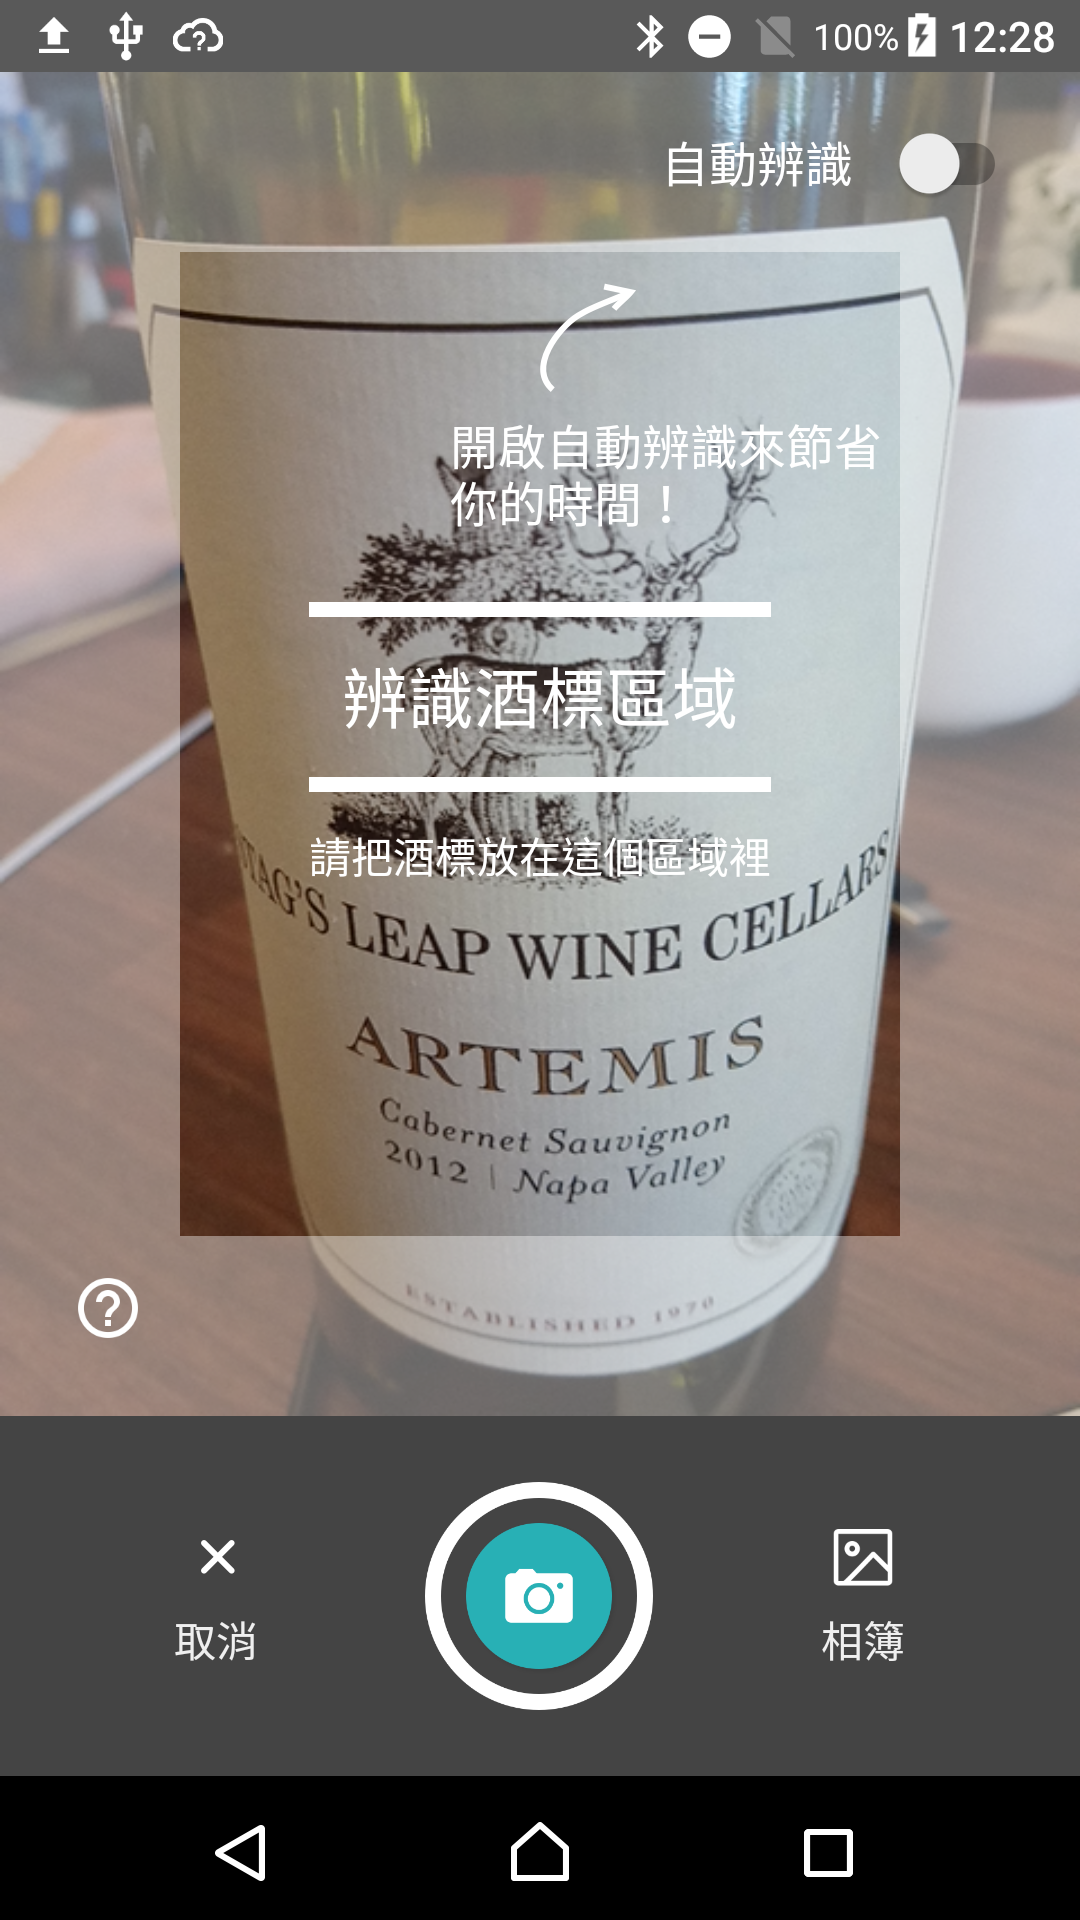  葡萄酒也能走上線，智慧酒窖App打造一站式服務